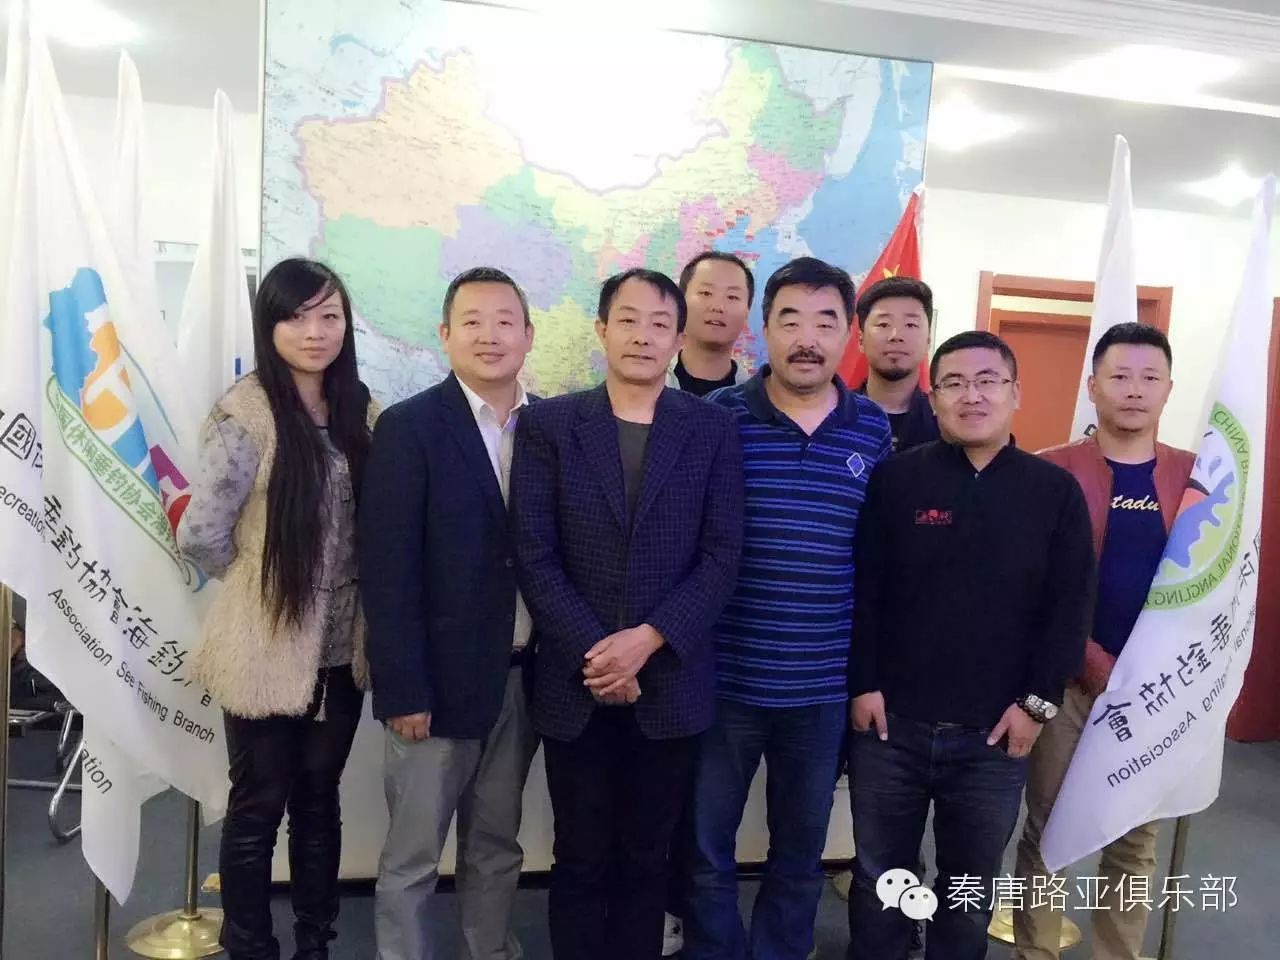 中国海钓·路亚产业发展联盟及研讨会 近期将在北京召开